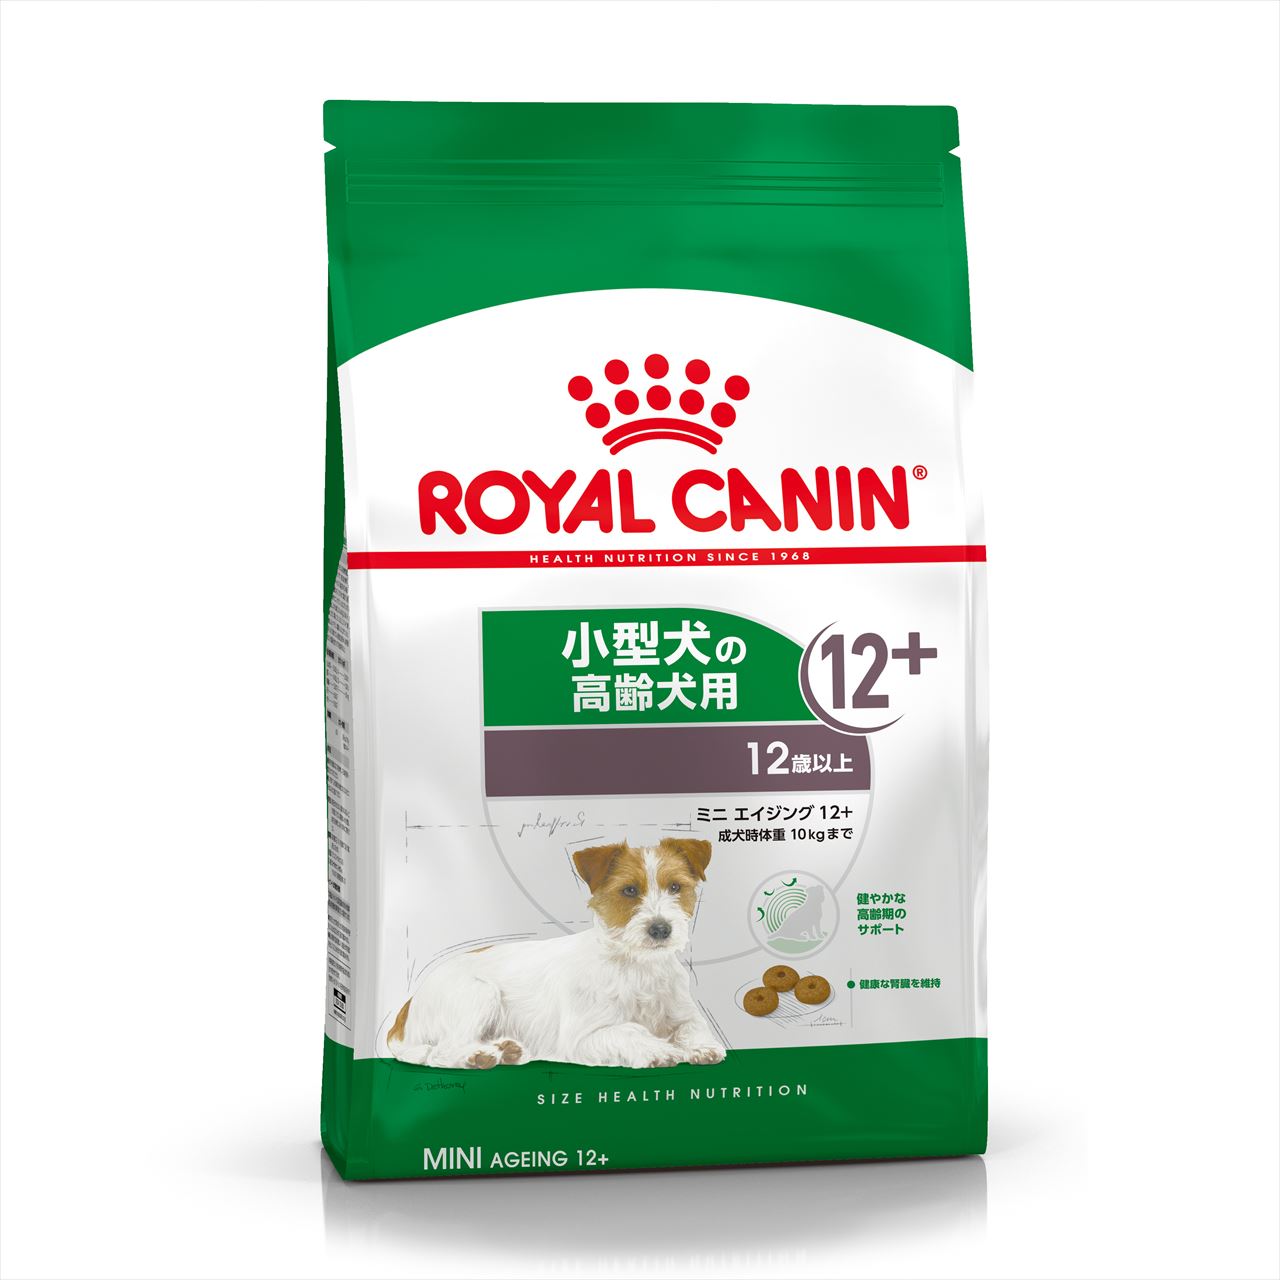 Royal Canin（ロイヤルカナン） | ペット用品・ペットフード卸売サイト全国発送ＯＫ